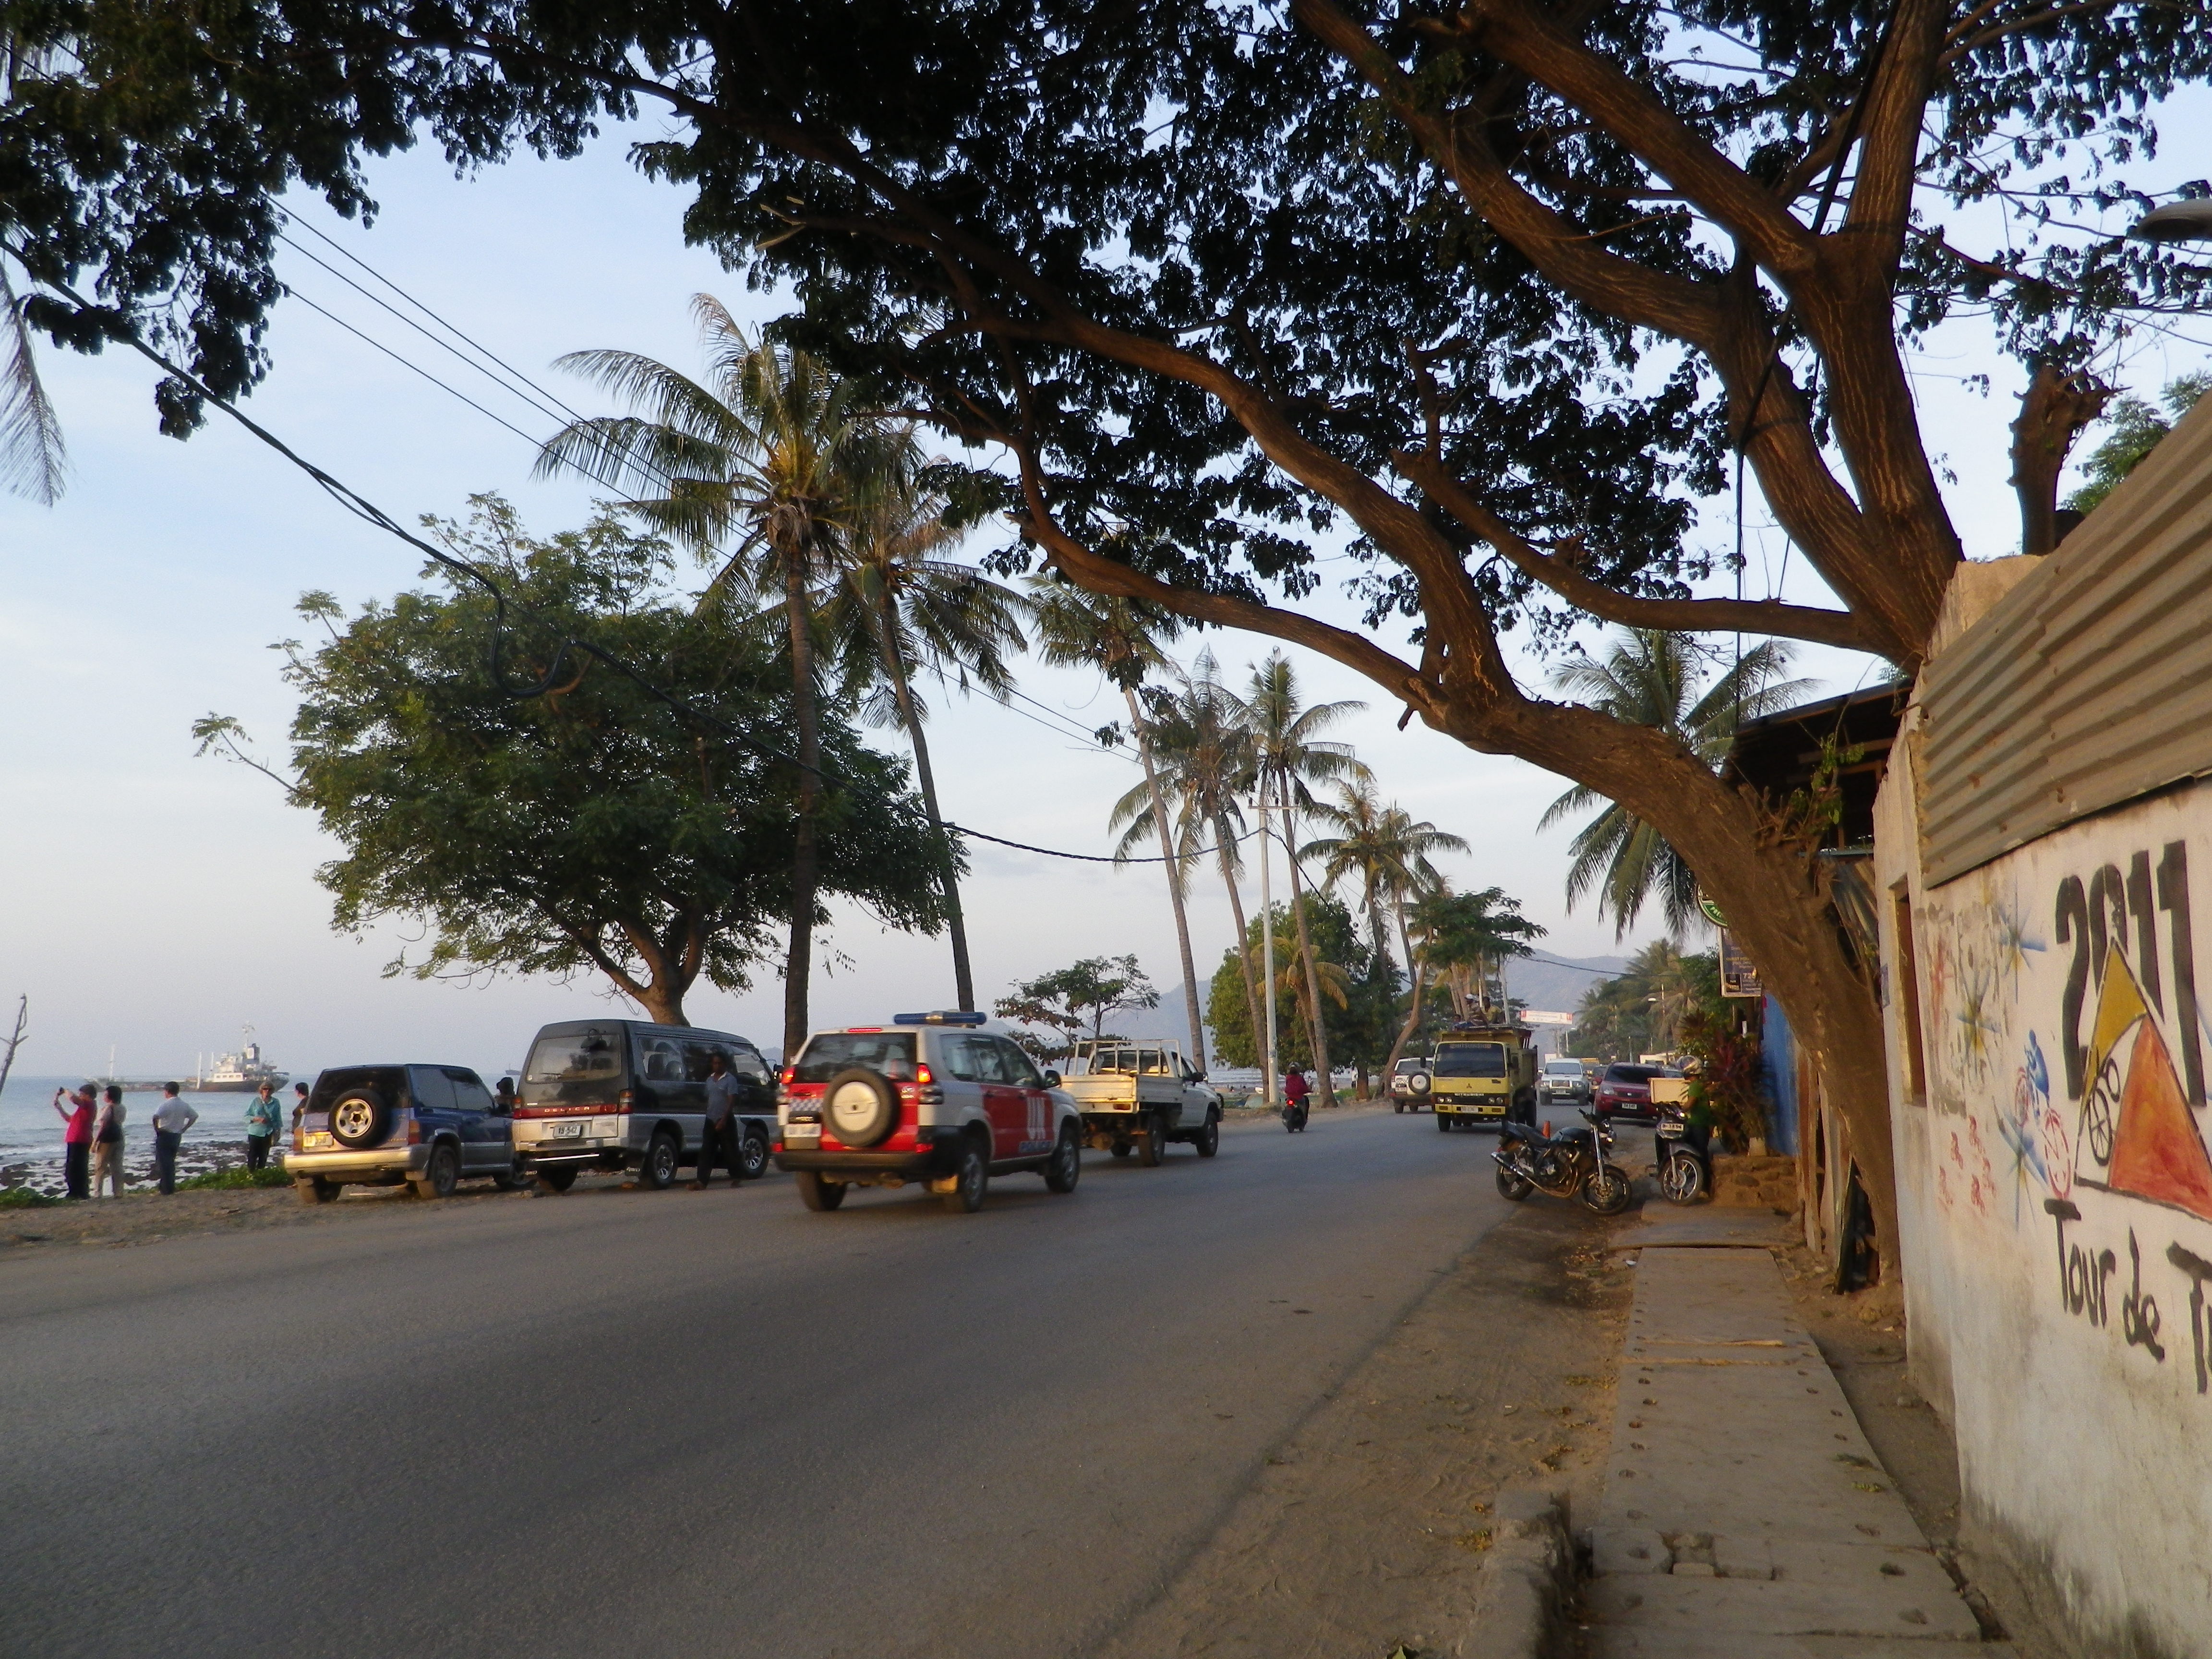 Timor Leste street at dusk